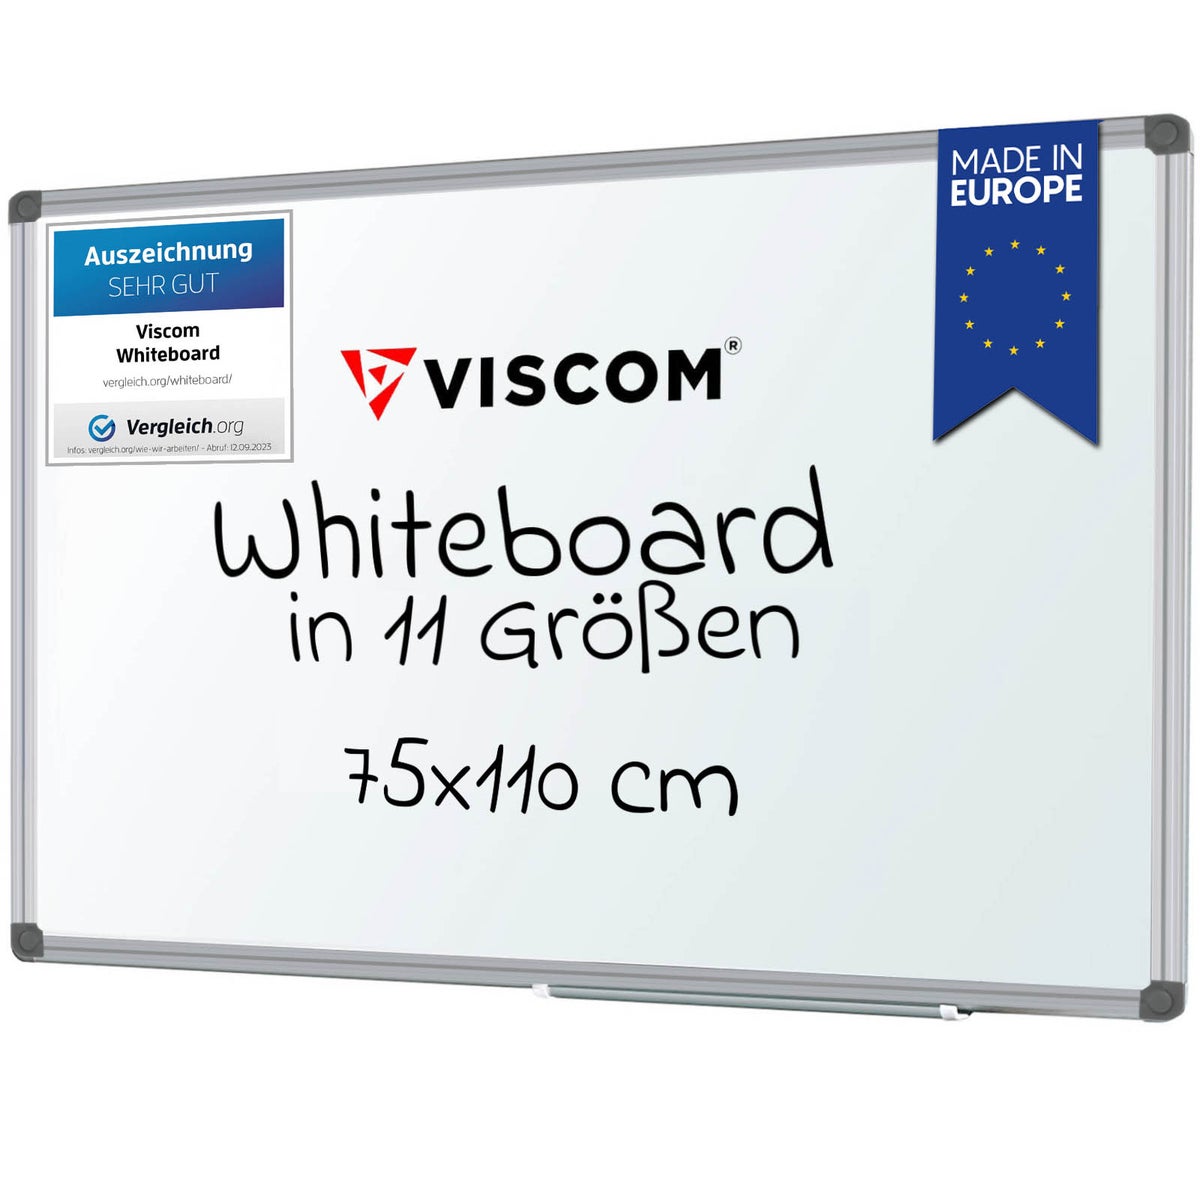 VISCOM Whiteboard magnetisch - 75 x 110 cm - Magnettafel für Büro & Zuhause - Magnetwand, kratzfest & beschreibbar - mit Aluminium-Rahmen - für Hoch- und Querformat